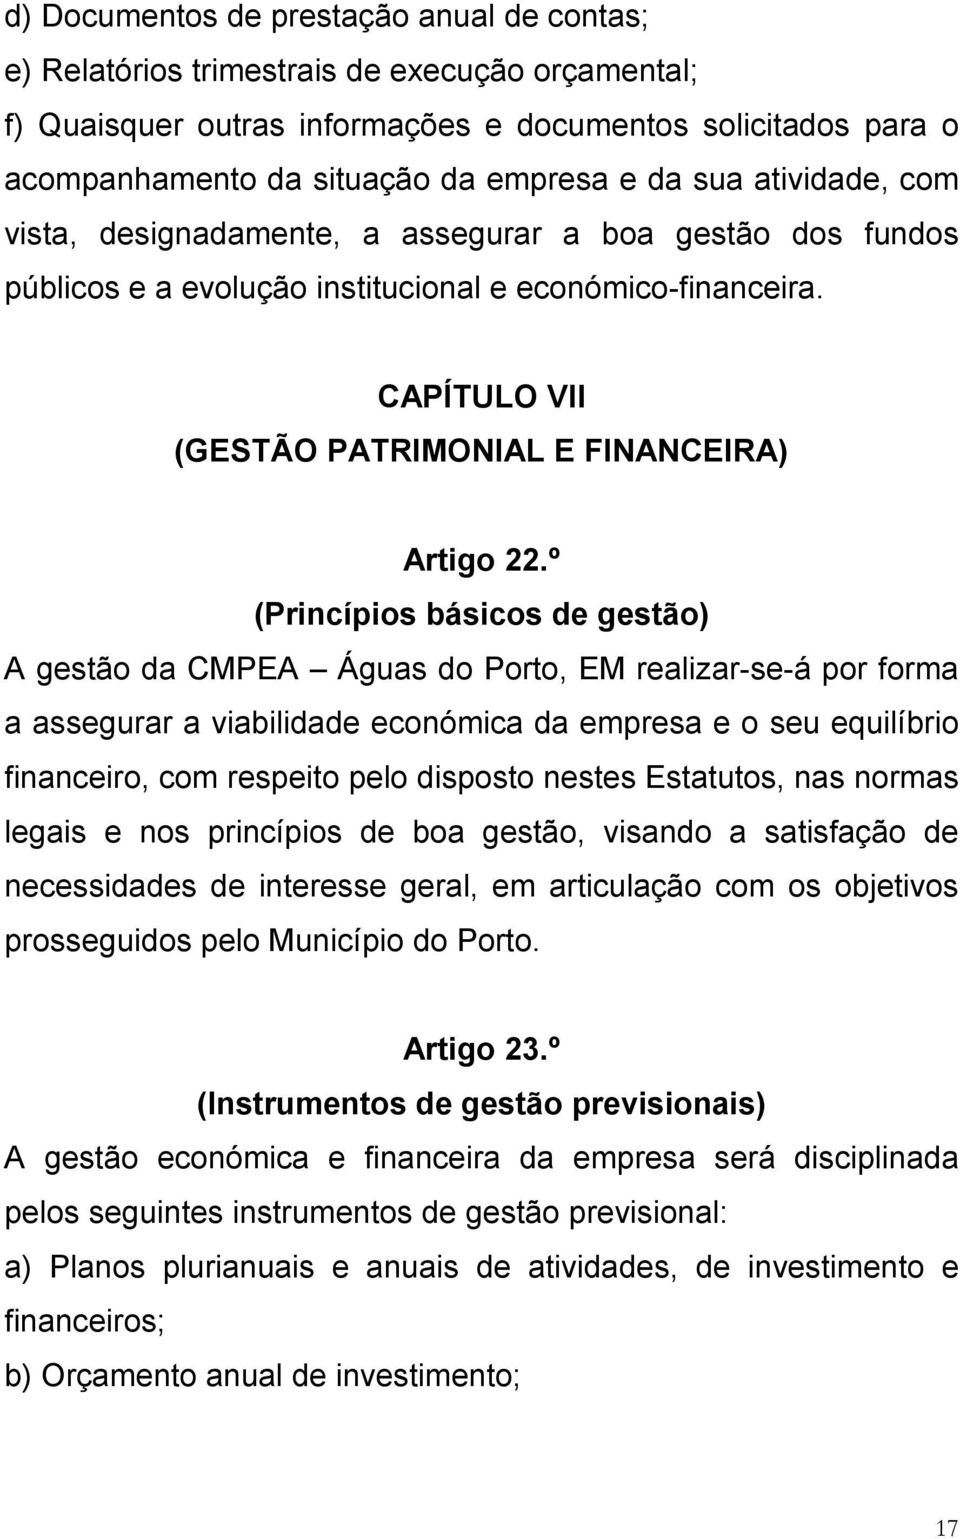 º (Princípios básicos de gestão) A gestão da CMPEA Águas do Porto, EM realizar-se-á por forma a assegurar a viabilidade económica da empresa e o seu equilíbrio financeiro, com respeito pelo disposto